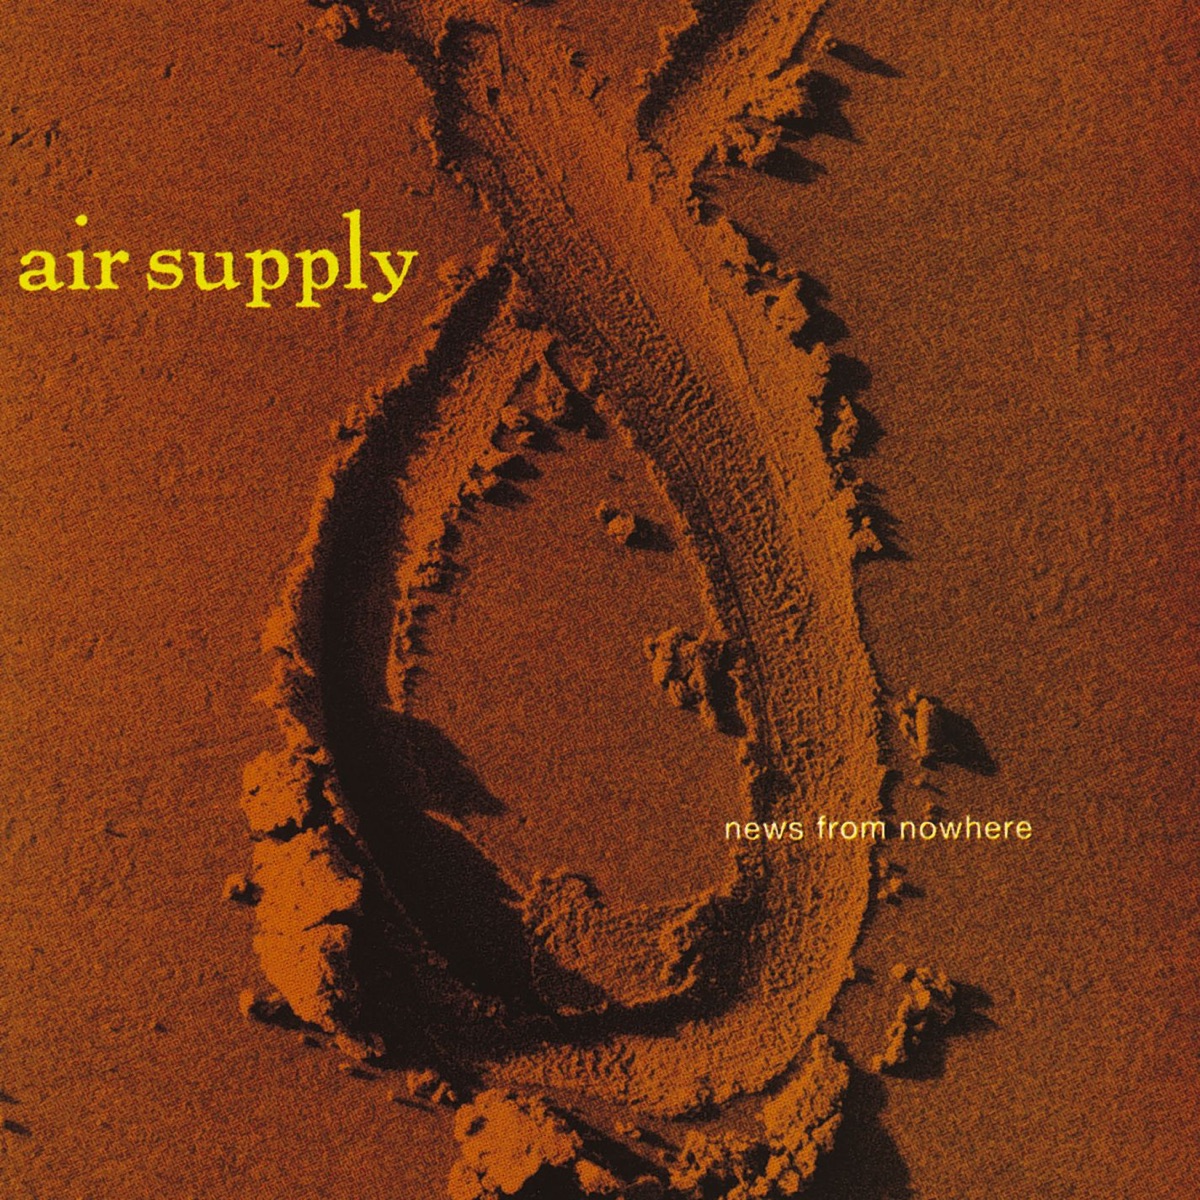 Mumbo Jumbo - Album by Air Supply - Apple Music